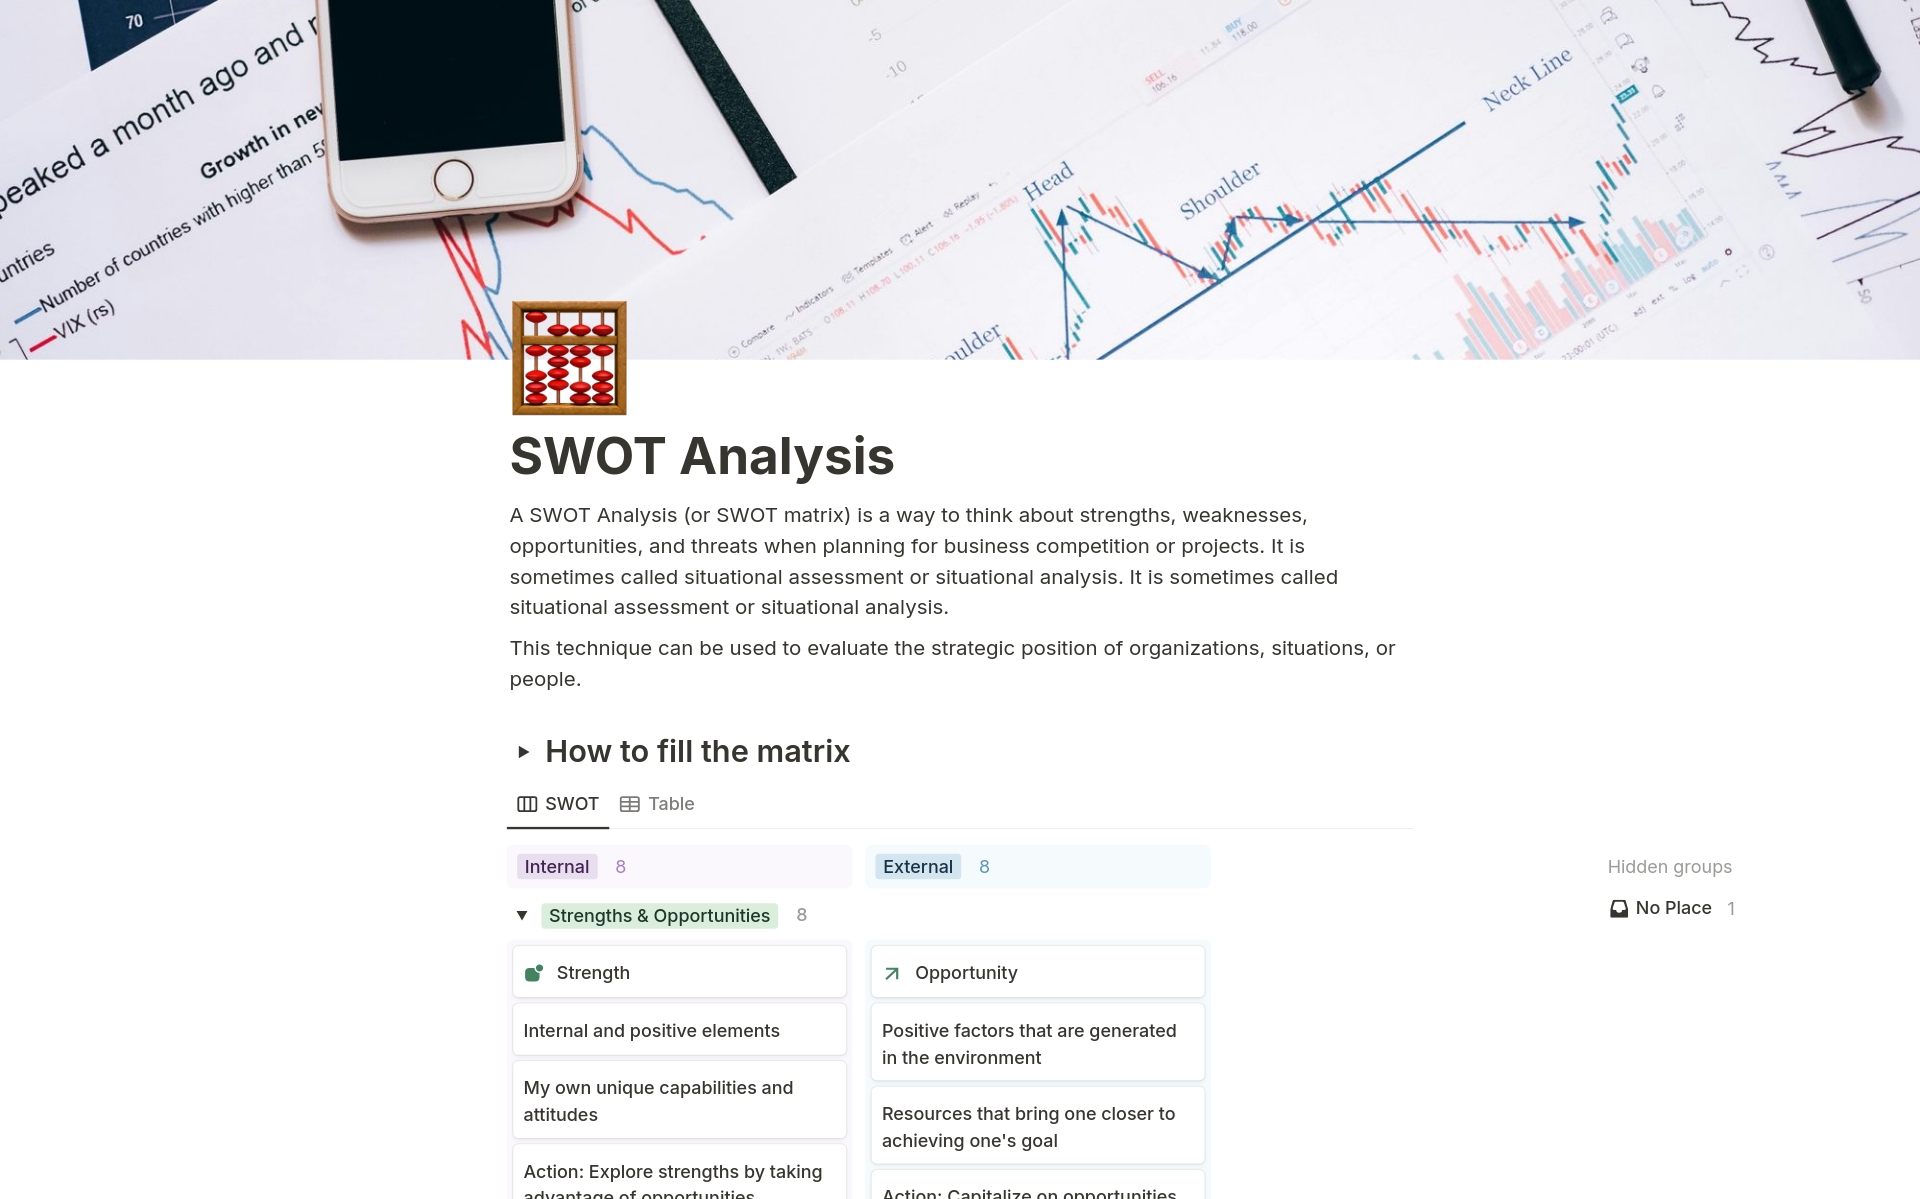 Uma prévia do modelo para SWOT Analysis